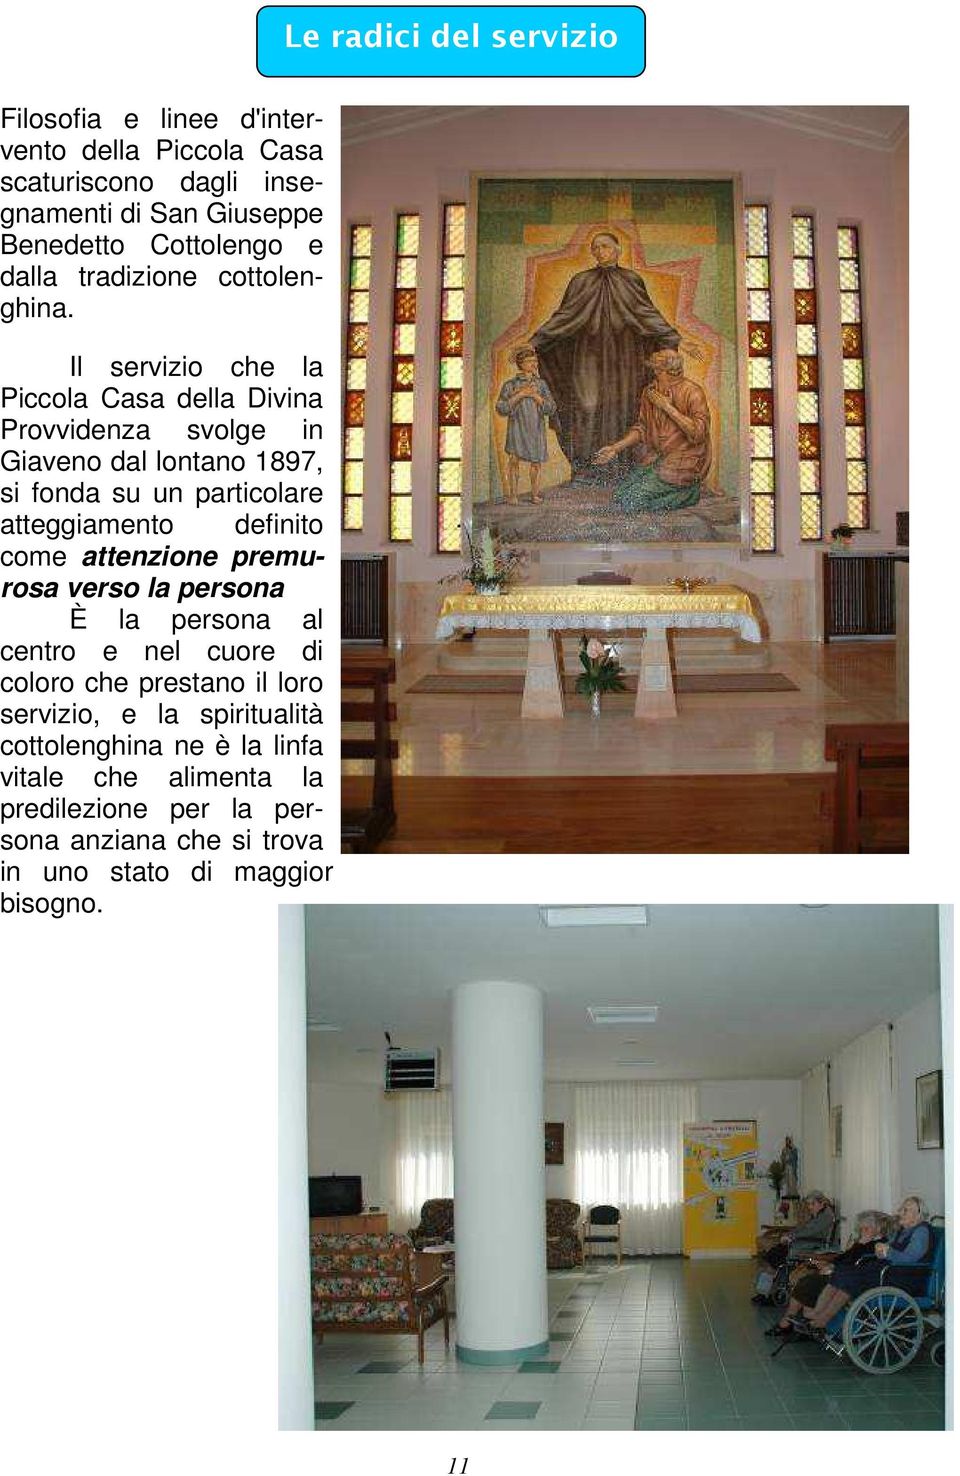 Il servizio che la Piccola Casa della Divina Provvidenza svolge in Giaveno dal lontano 1897, si fonda su un particolare atteggiamento definito come